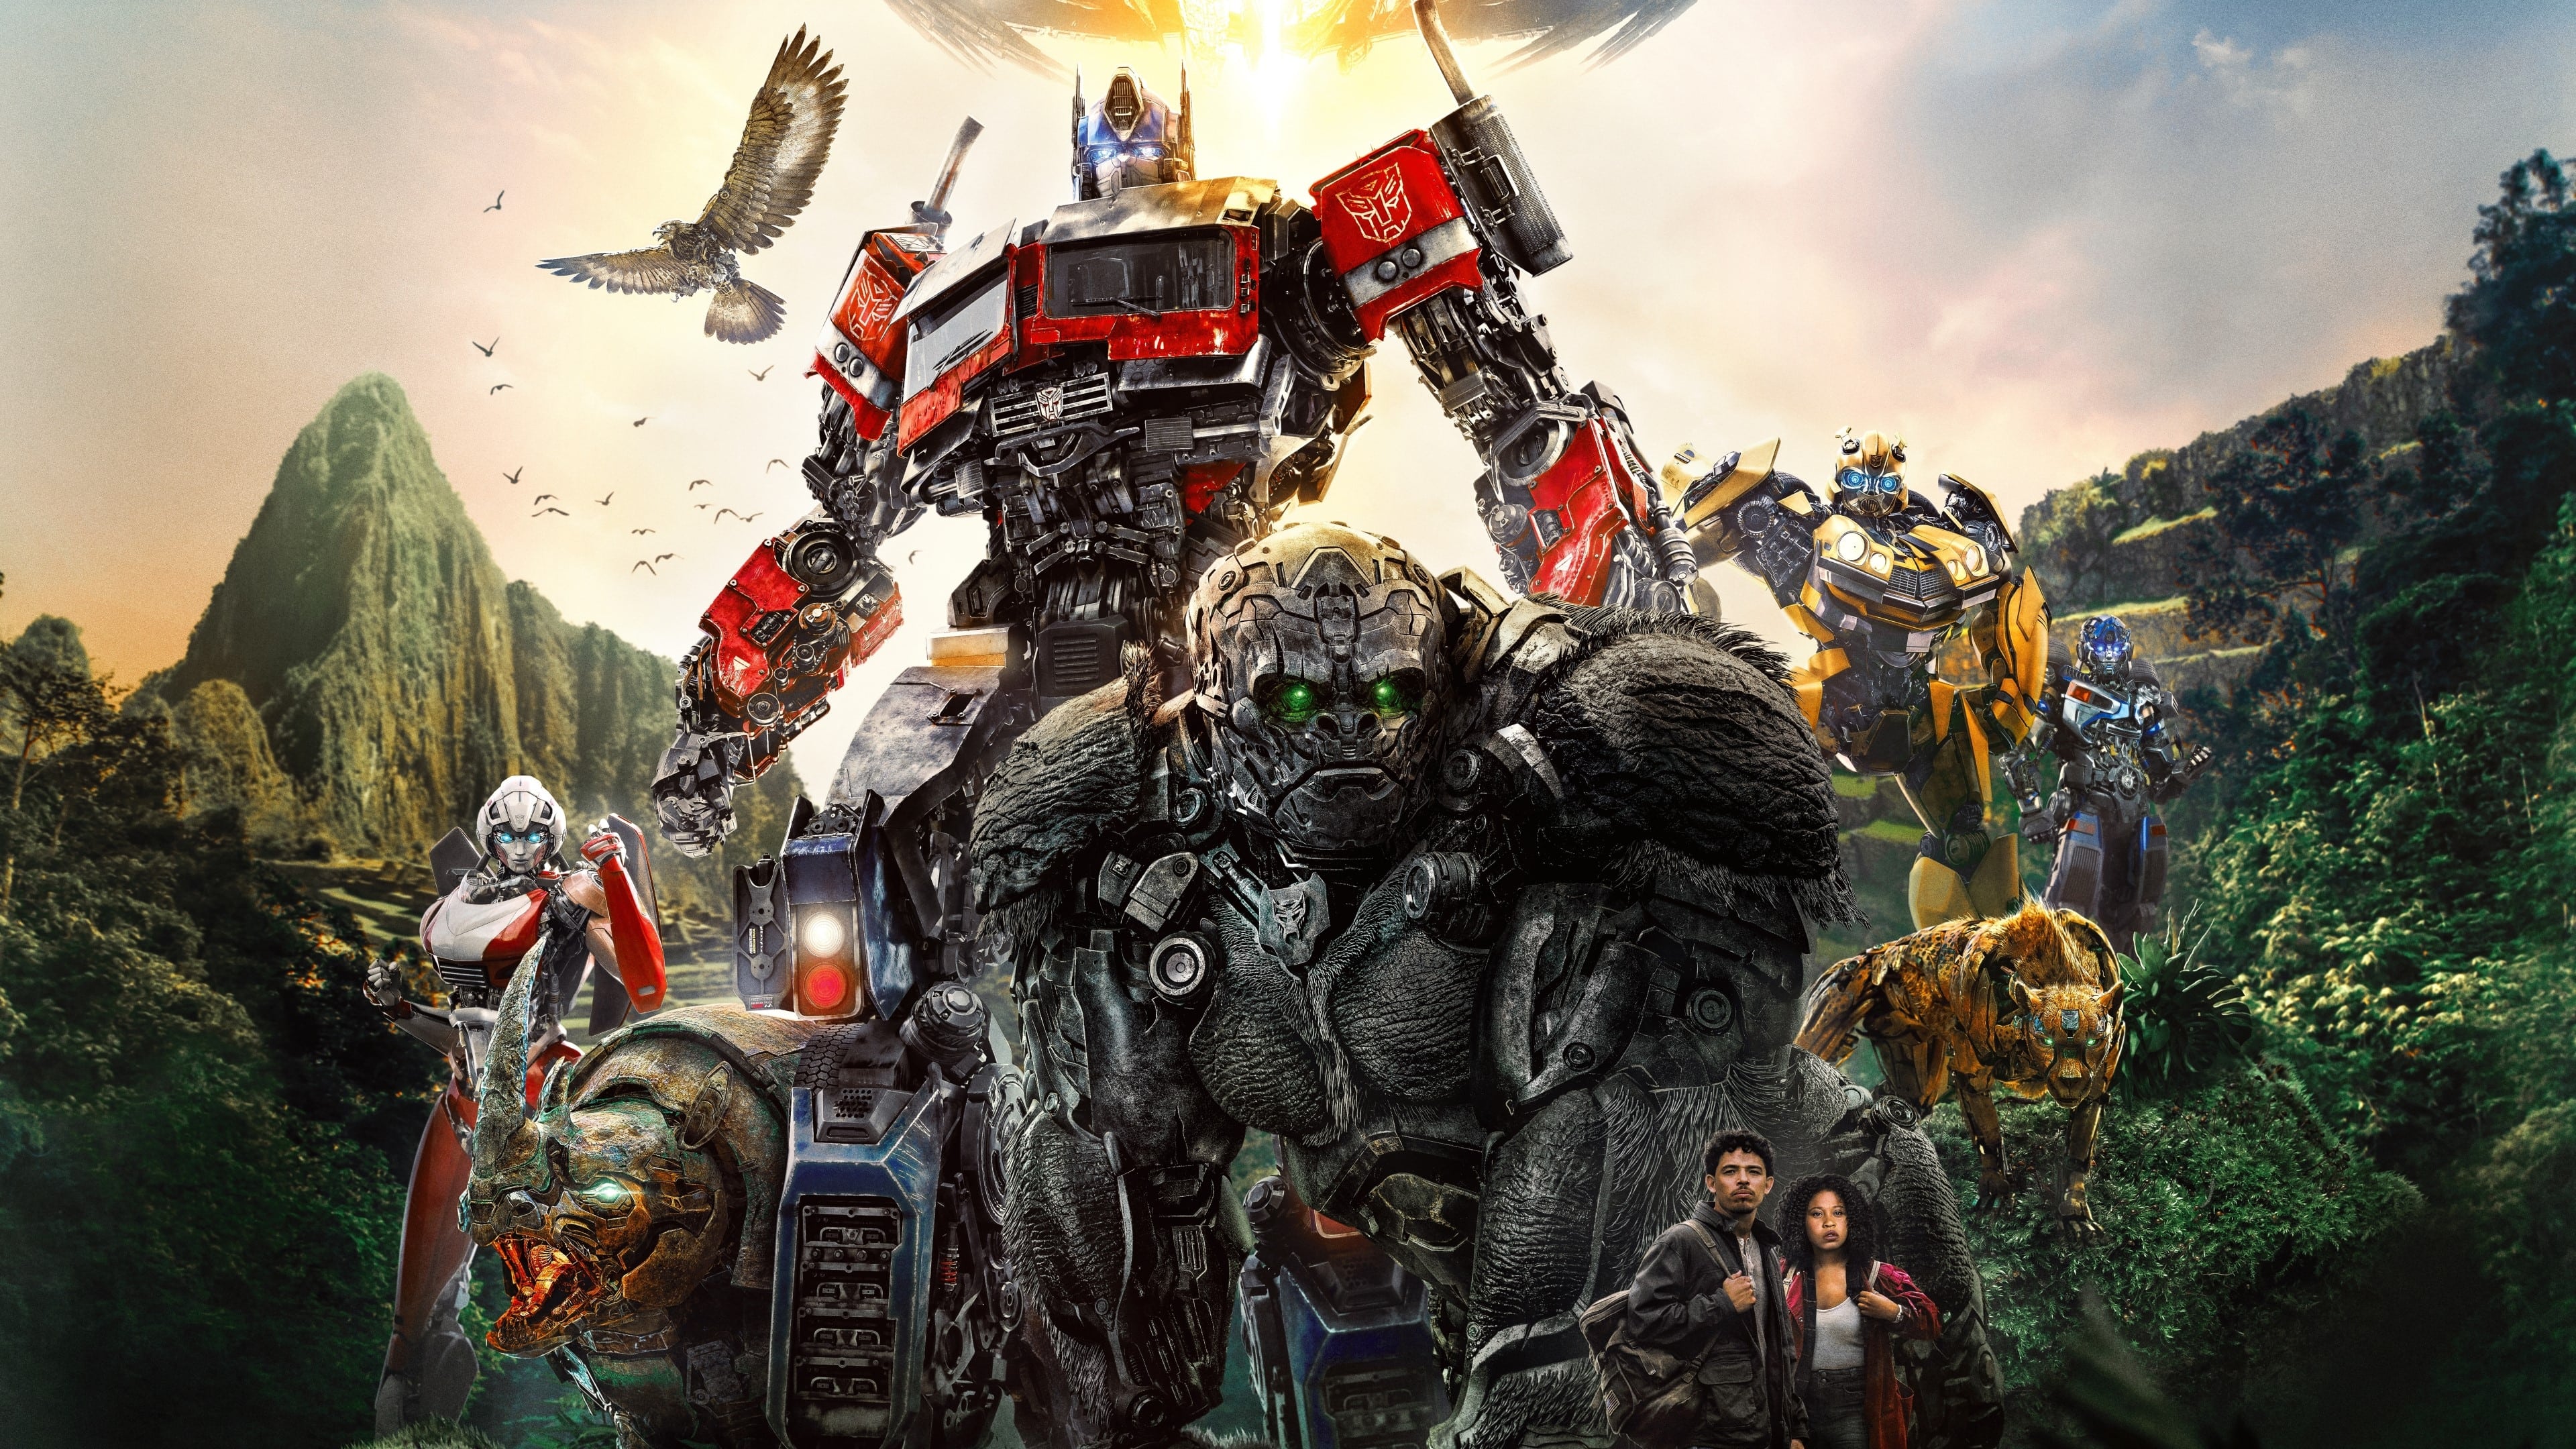 Transformers: Aufstieg der Bestien (2023)